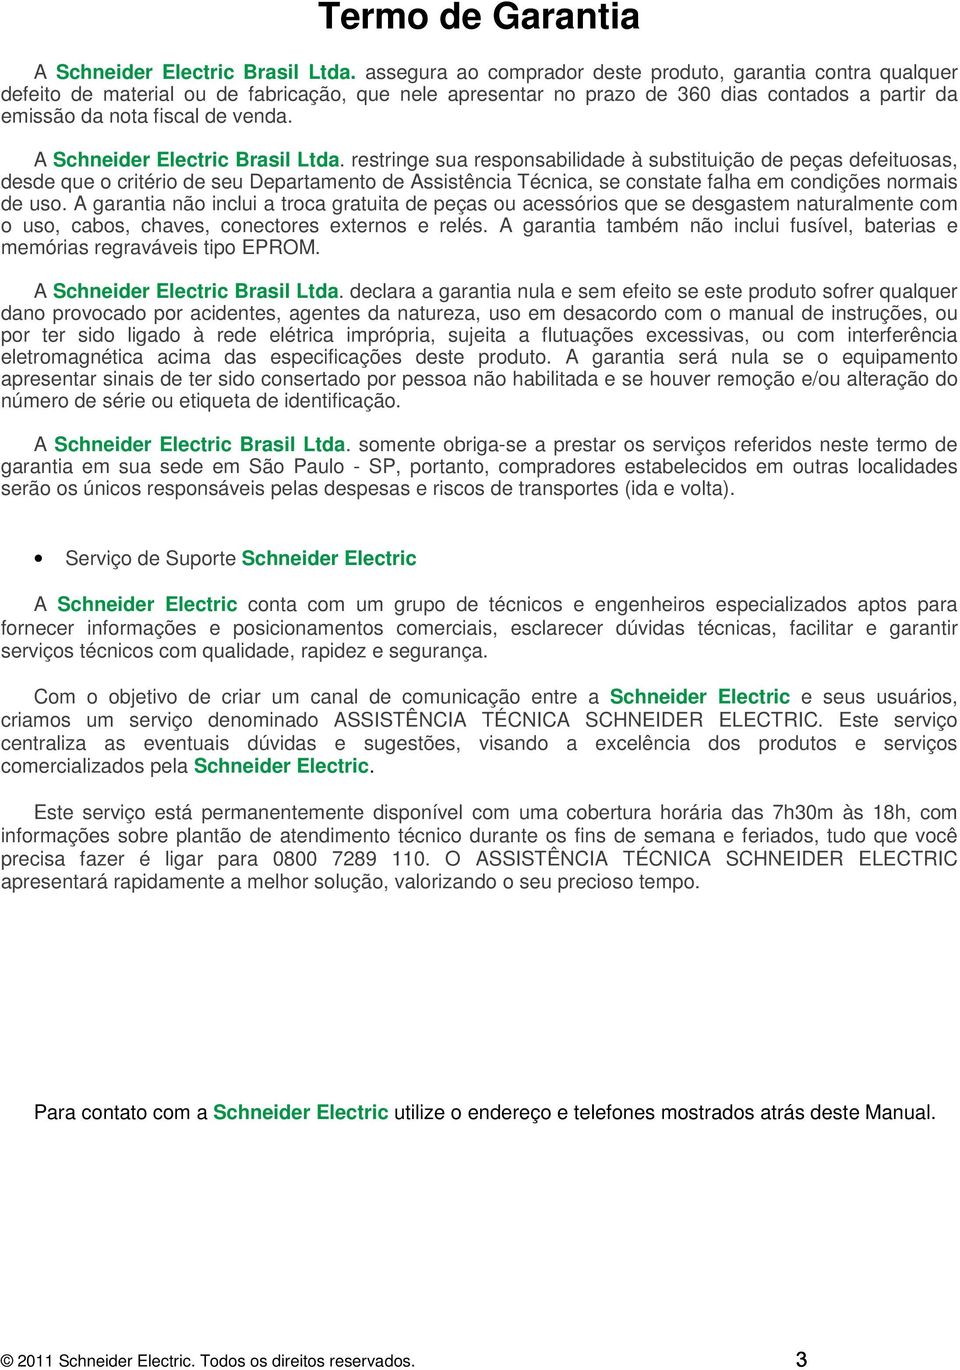 A Schneider Electric Brasil Ltda.